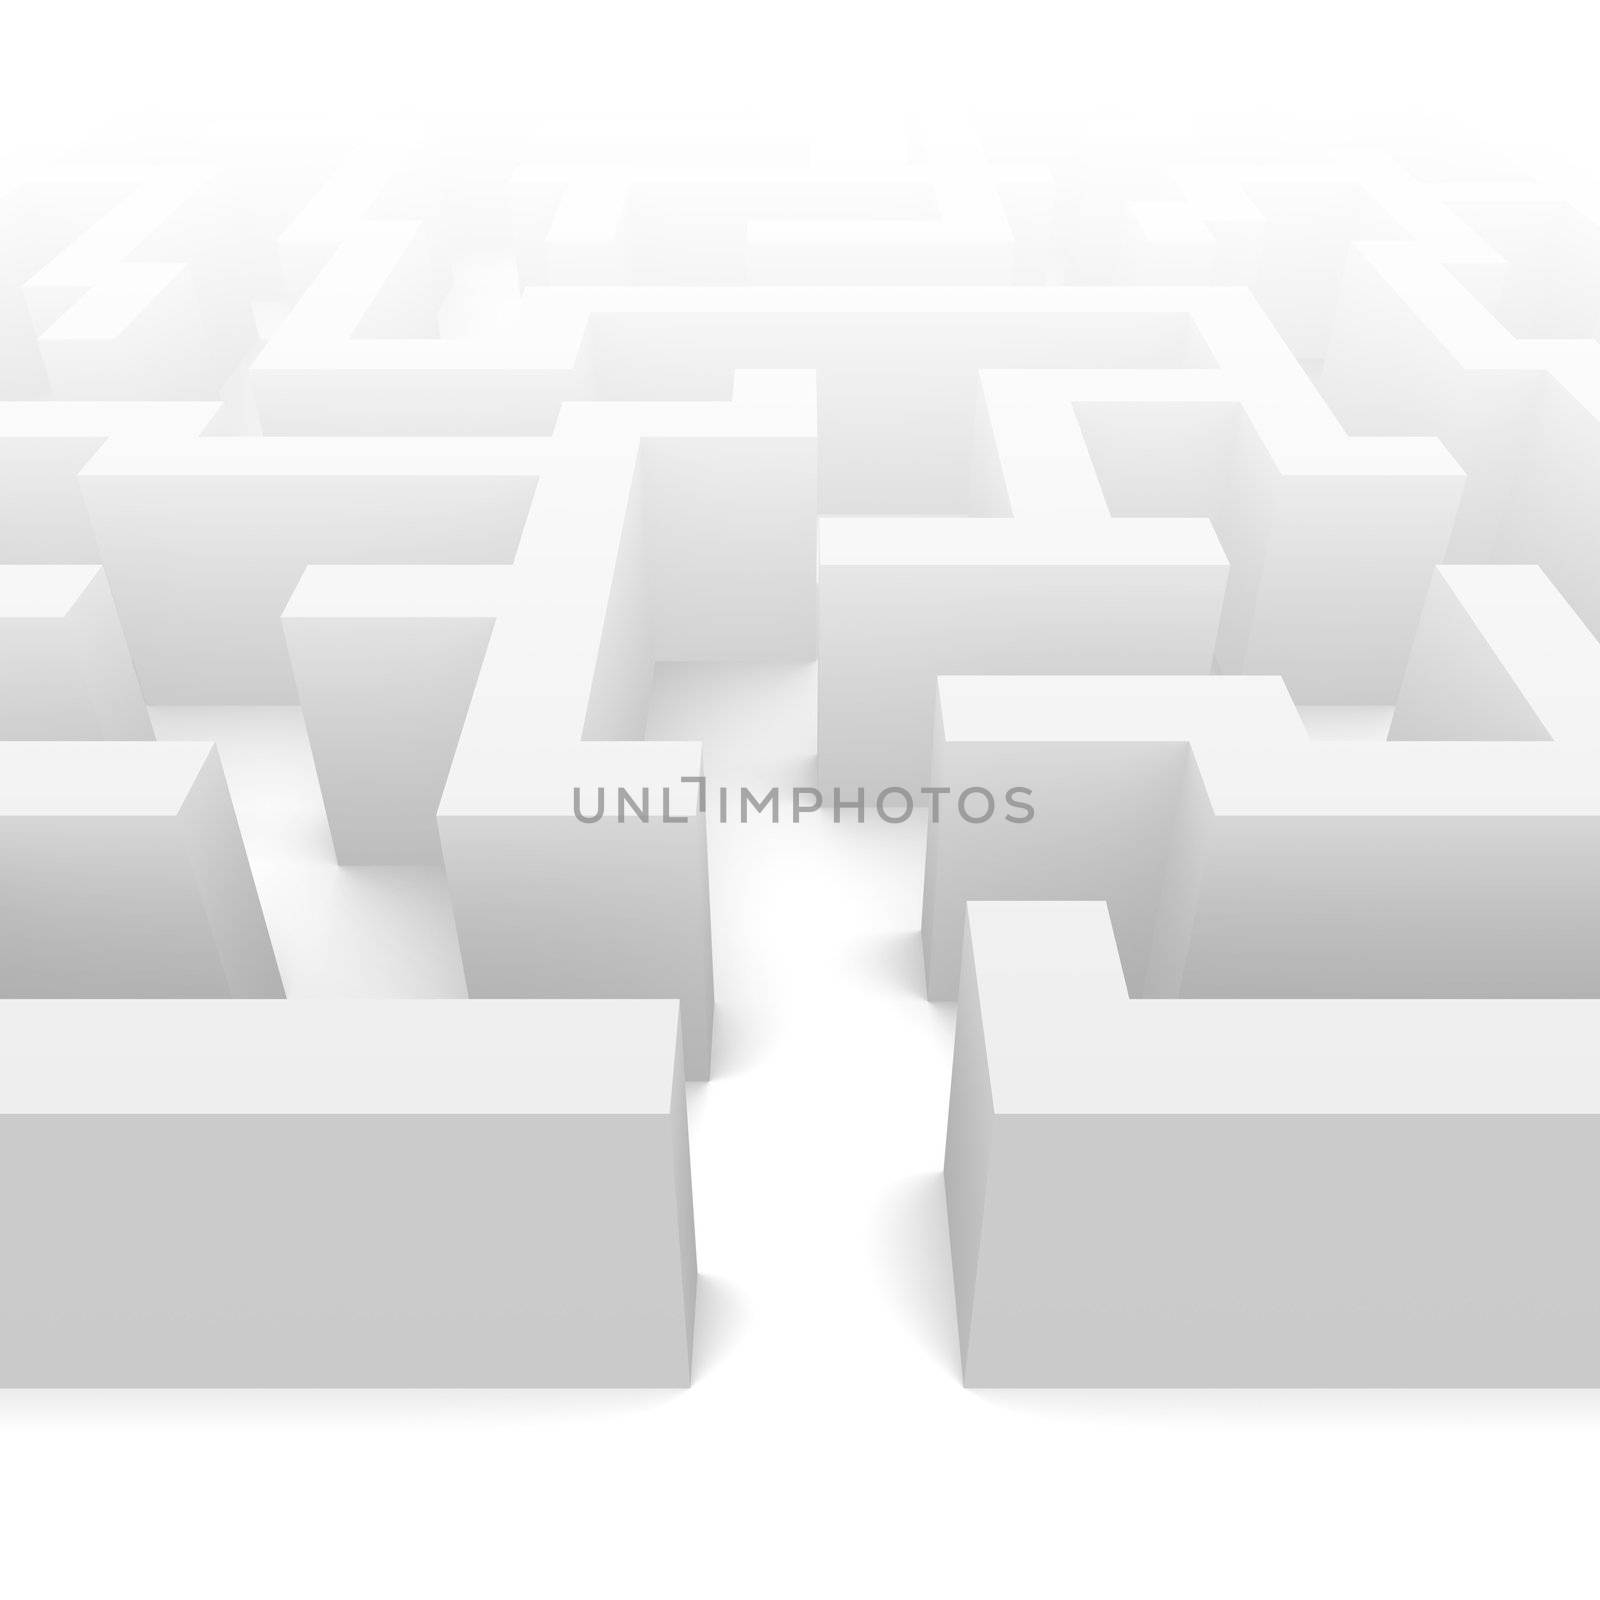 Labyrinth in fog illustration. 3d rendered image.